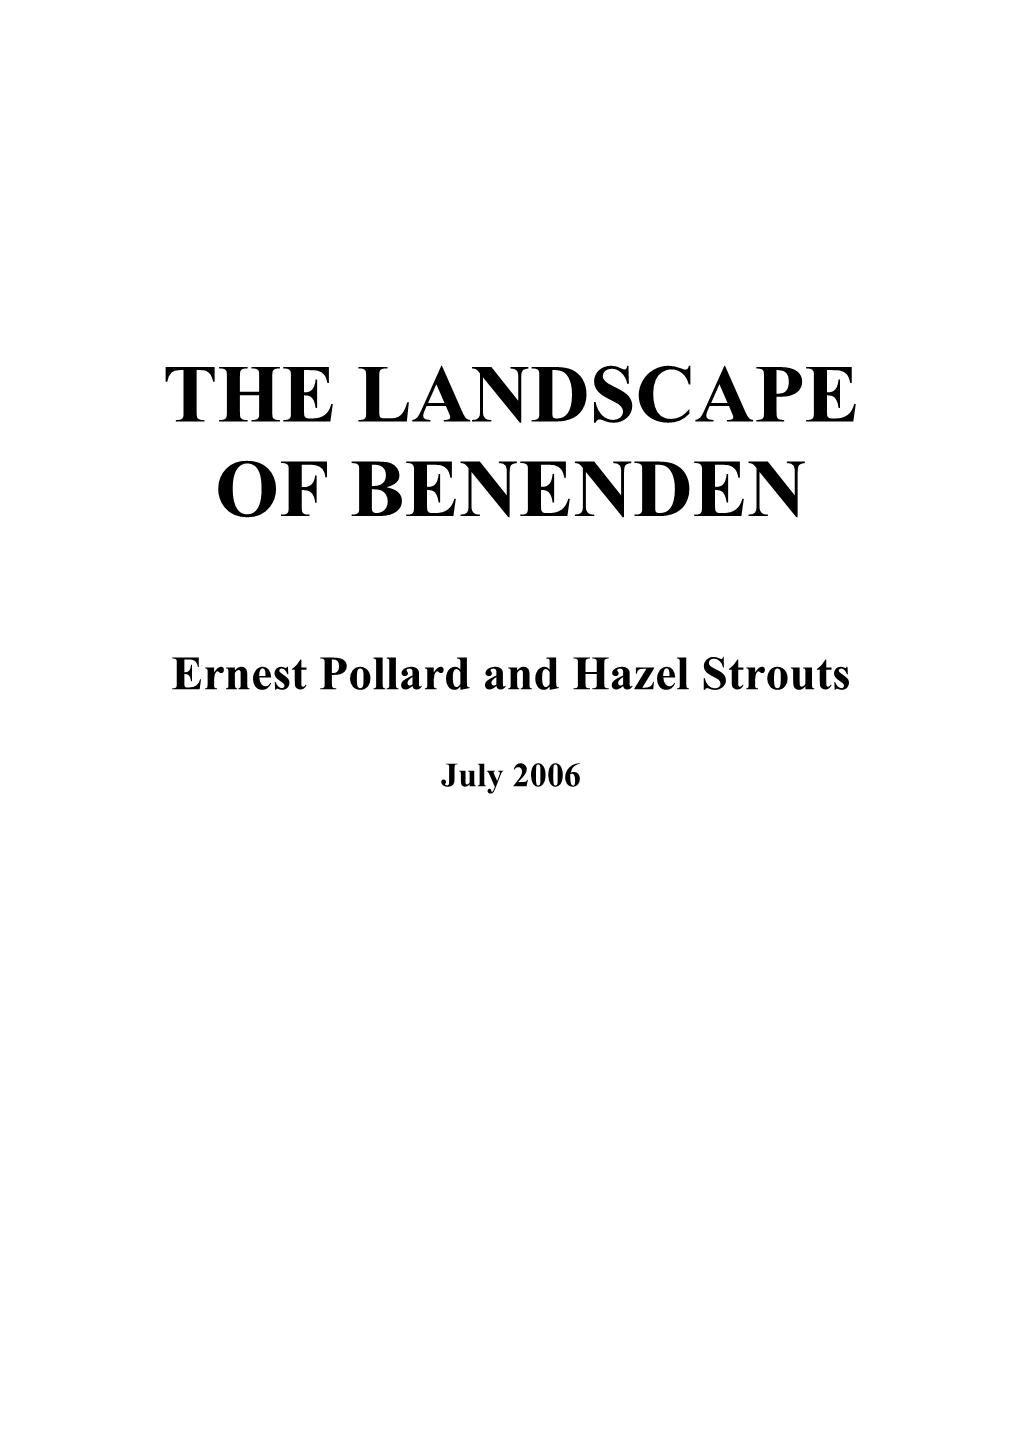 The Landscape of Benenden